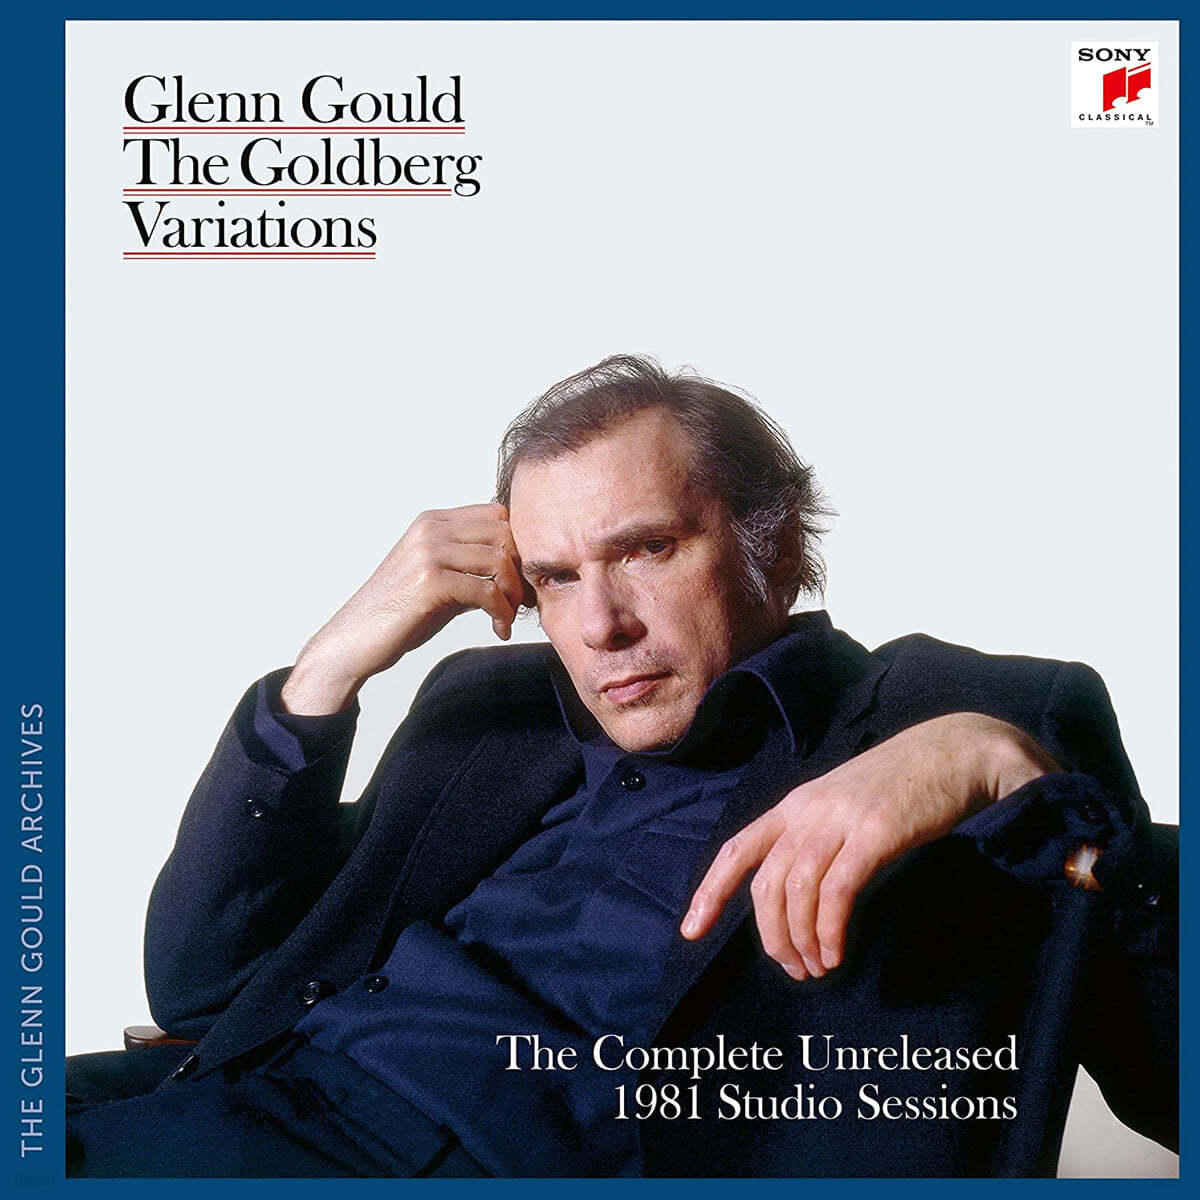 Glenn Gould 바흐: 골드베르크 변주곡 1981년 미발표 레코딩 세션 전집 - 글렌 굴드 (The Goldberg Variations) 